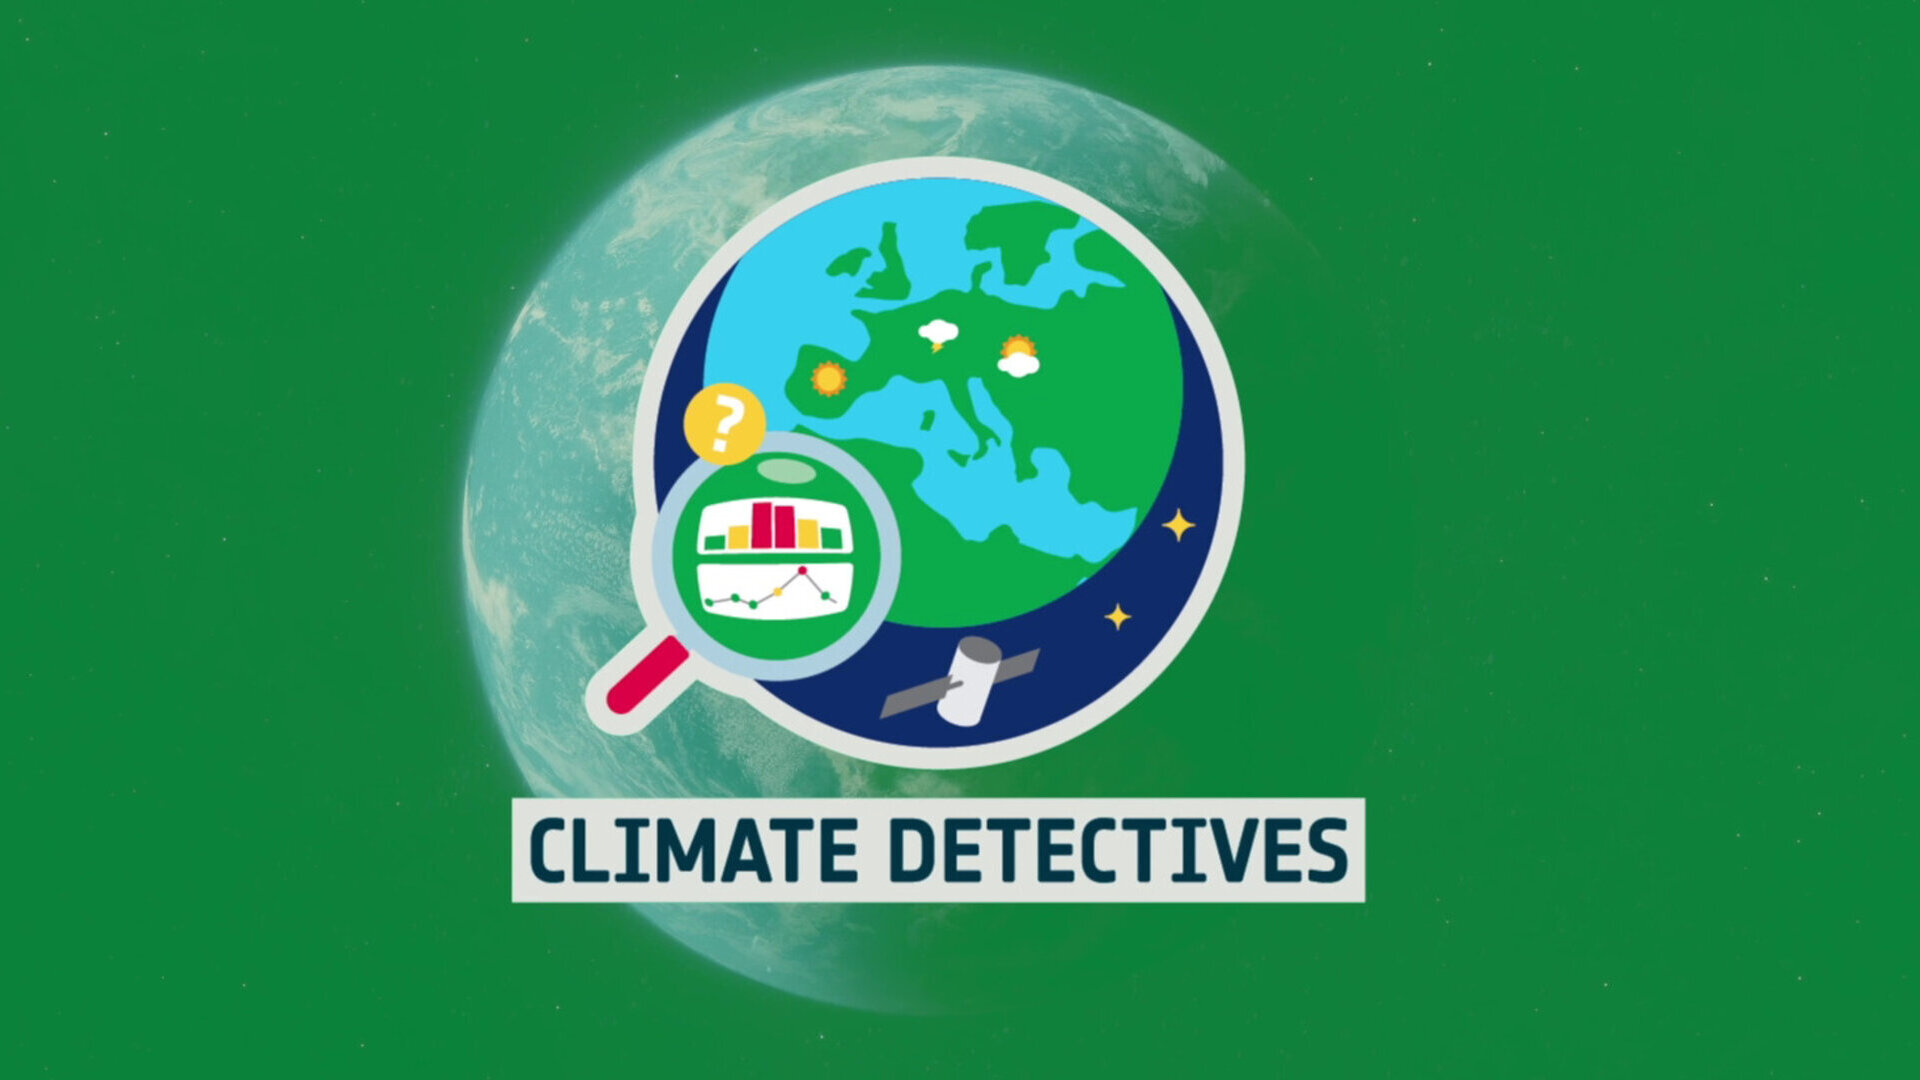 ASI - “Climate Detectives”, progetto educativo dedicato ai cambiamenti climatici